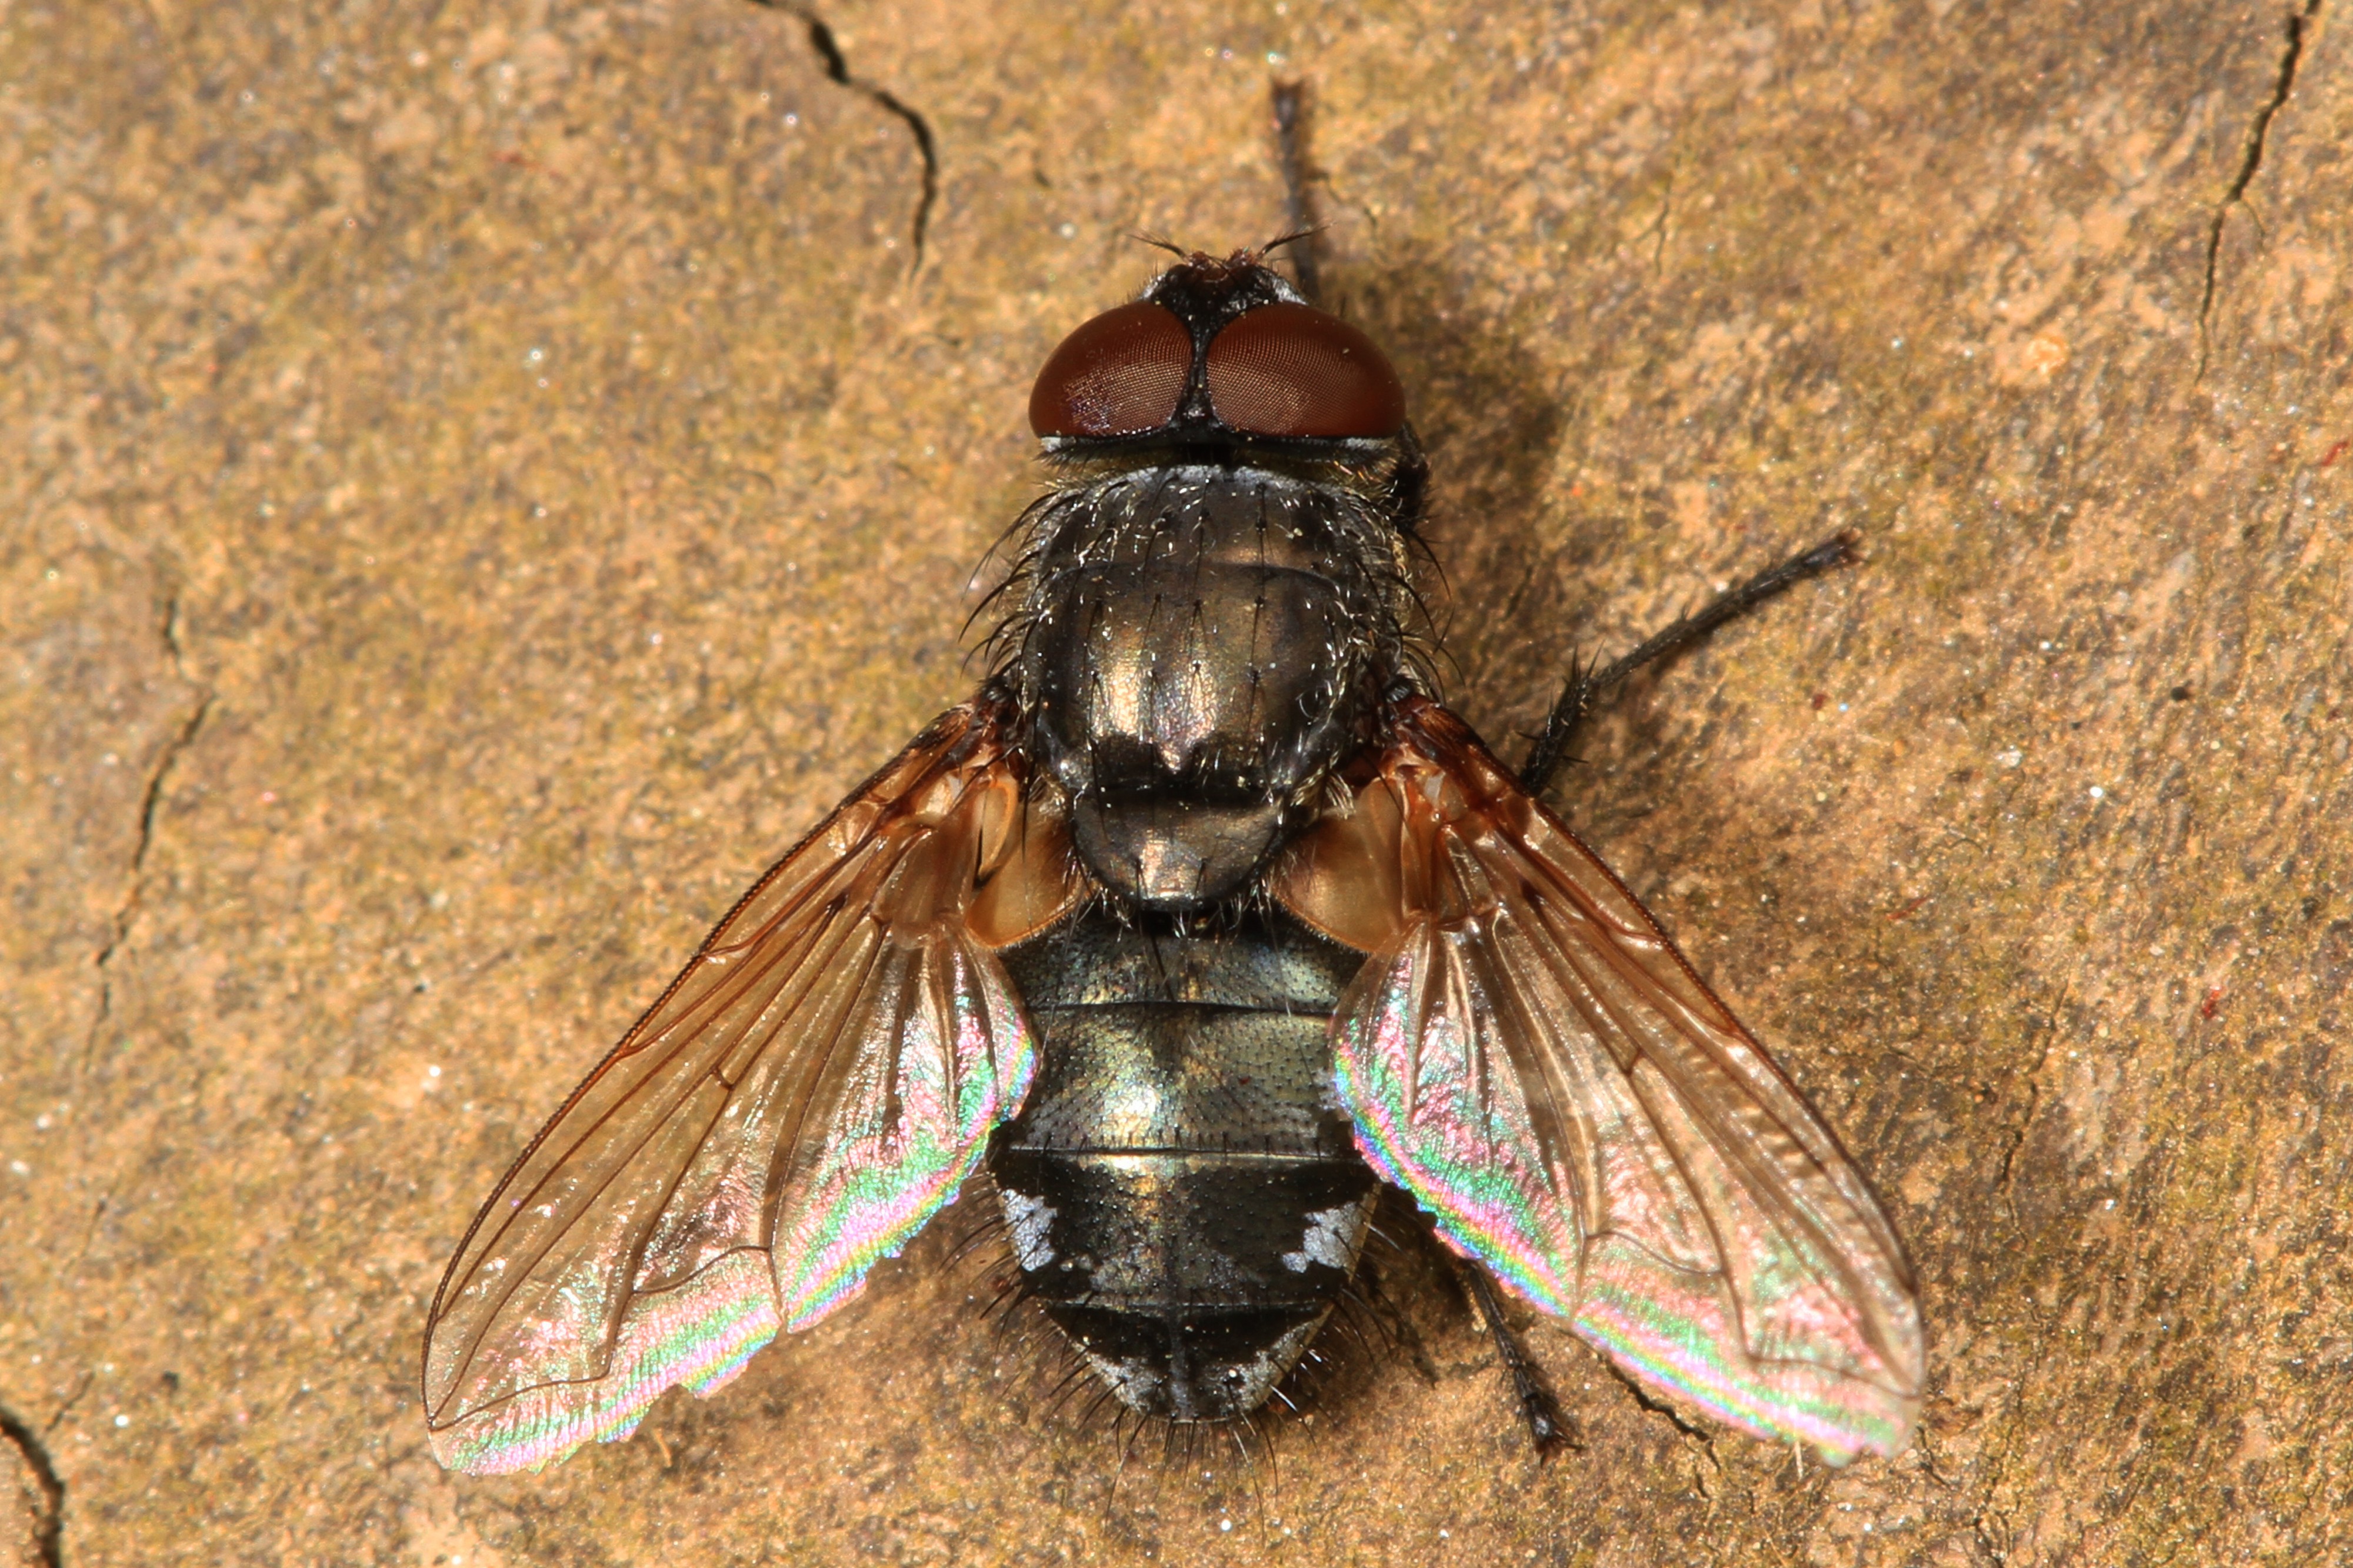 Cluster Fly - Pollenia species?, Julie Metz Wetlands, Woodbridge, Virginia